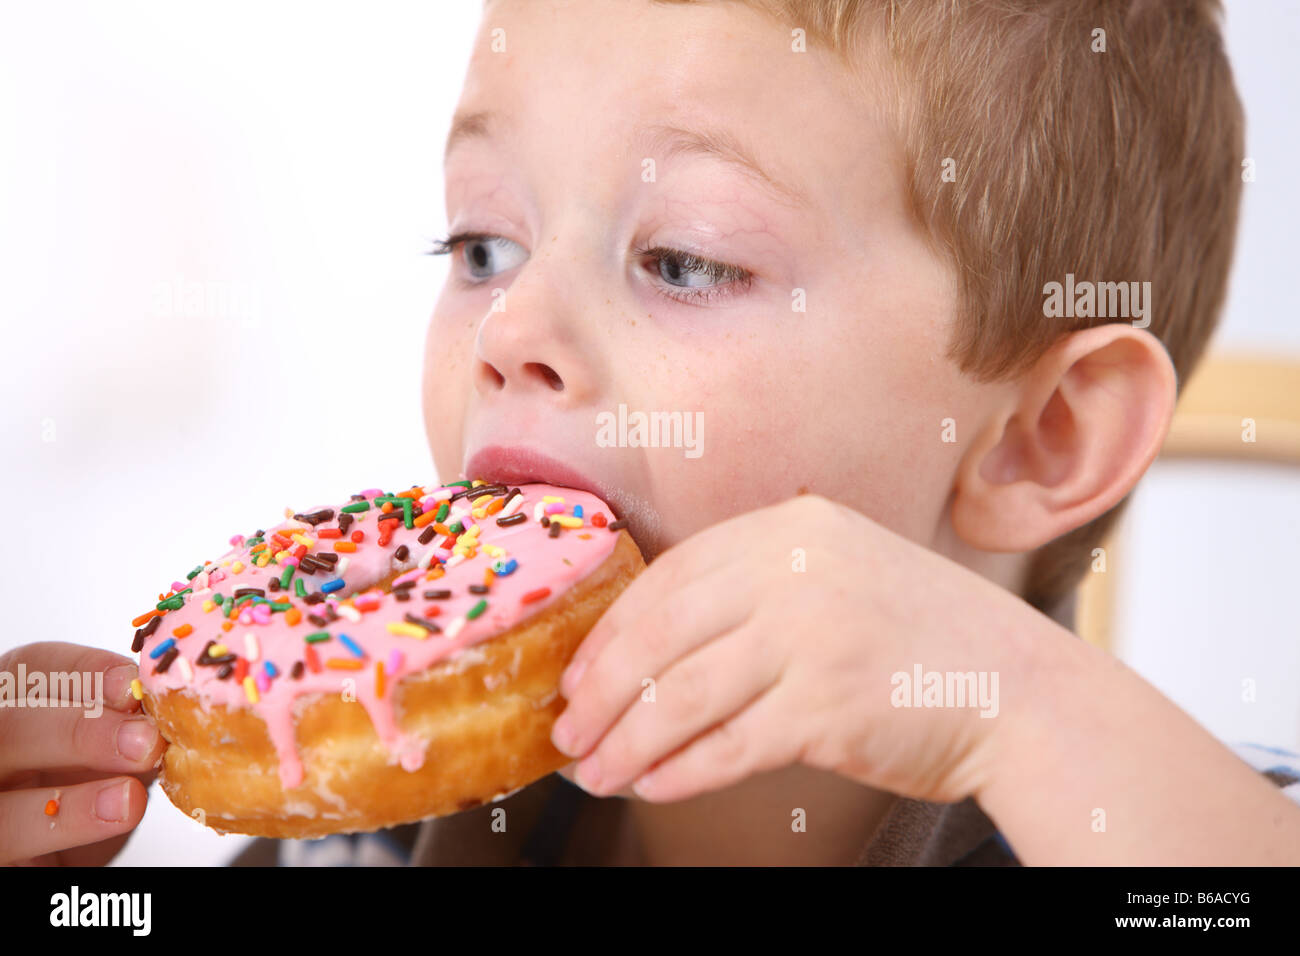 Young boy eating doughnut Stock Photo